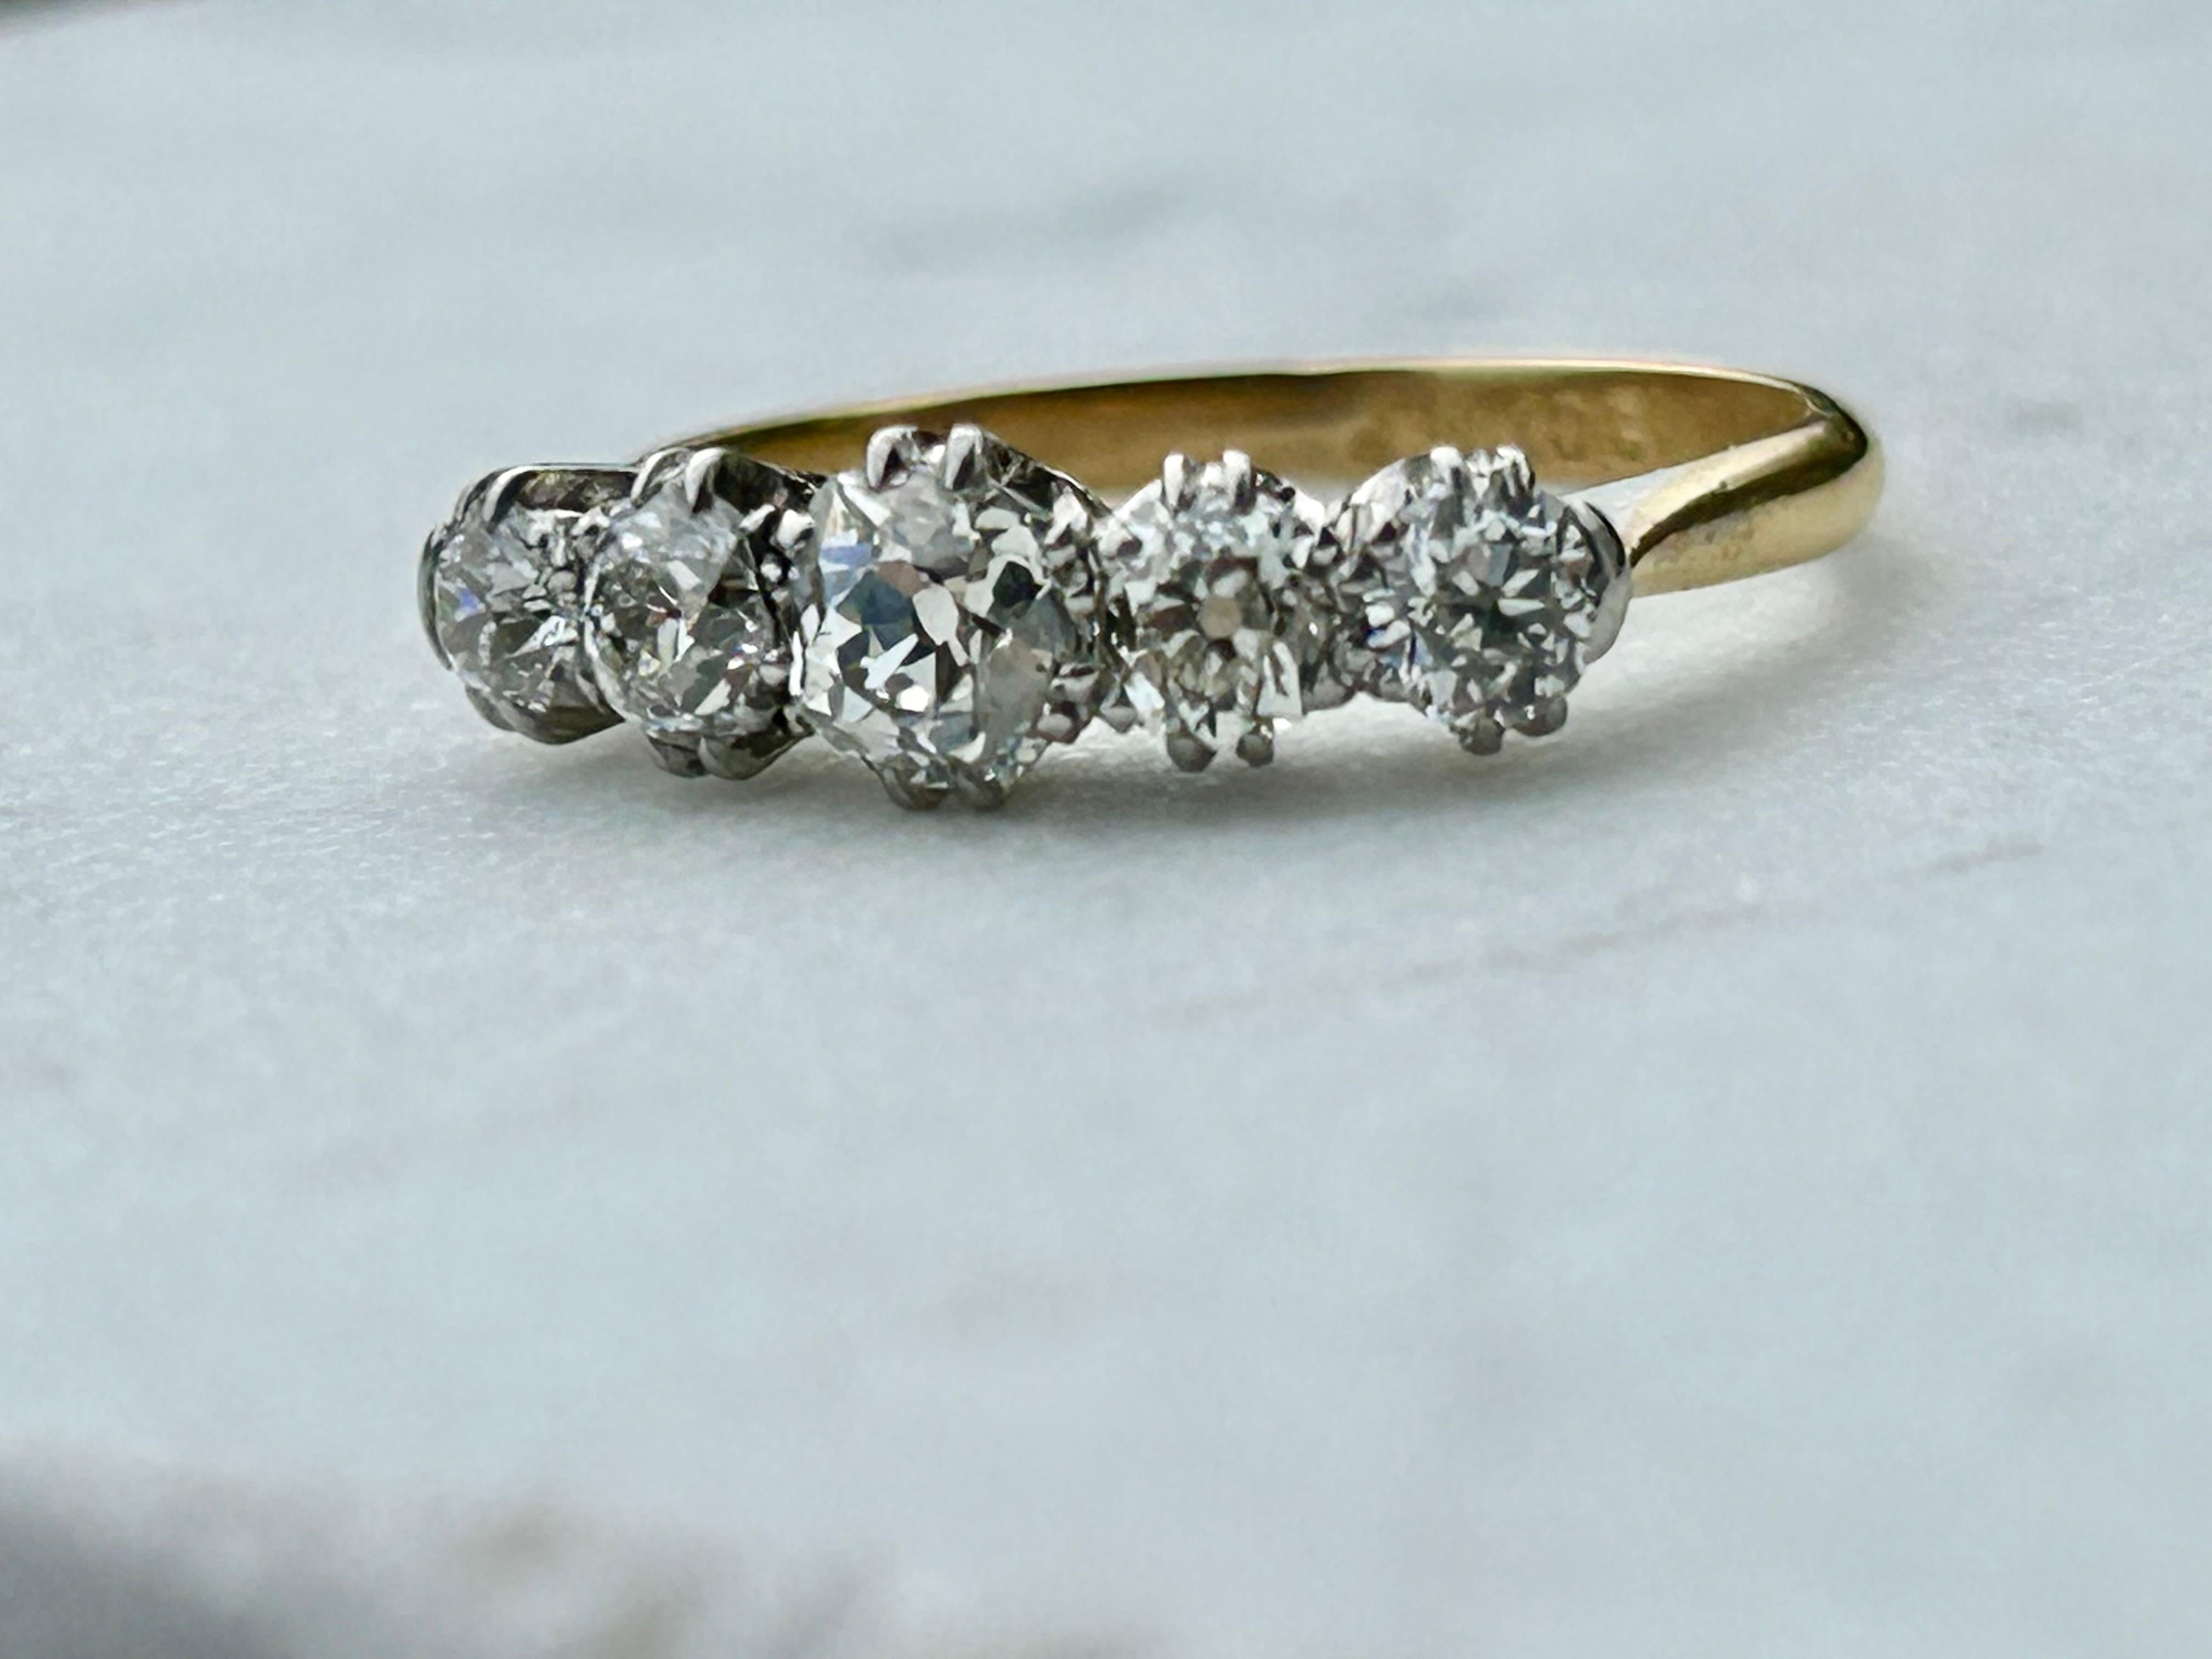 Antike Edwardian 5 Stein 1,65ctw Diamond Ring 18ct Gold und PLAT. Der perfekte Verlobungsring! Ich liebe die große, offene Kalotte im Mittelstein. Diese Diamanten sind der Star der Show. Sie sind sehr hell, weiß und funkelnd.
Gewicht: 2.54 Gramm